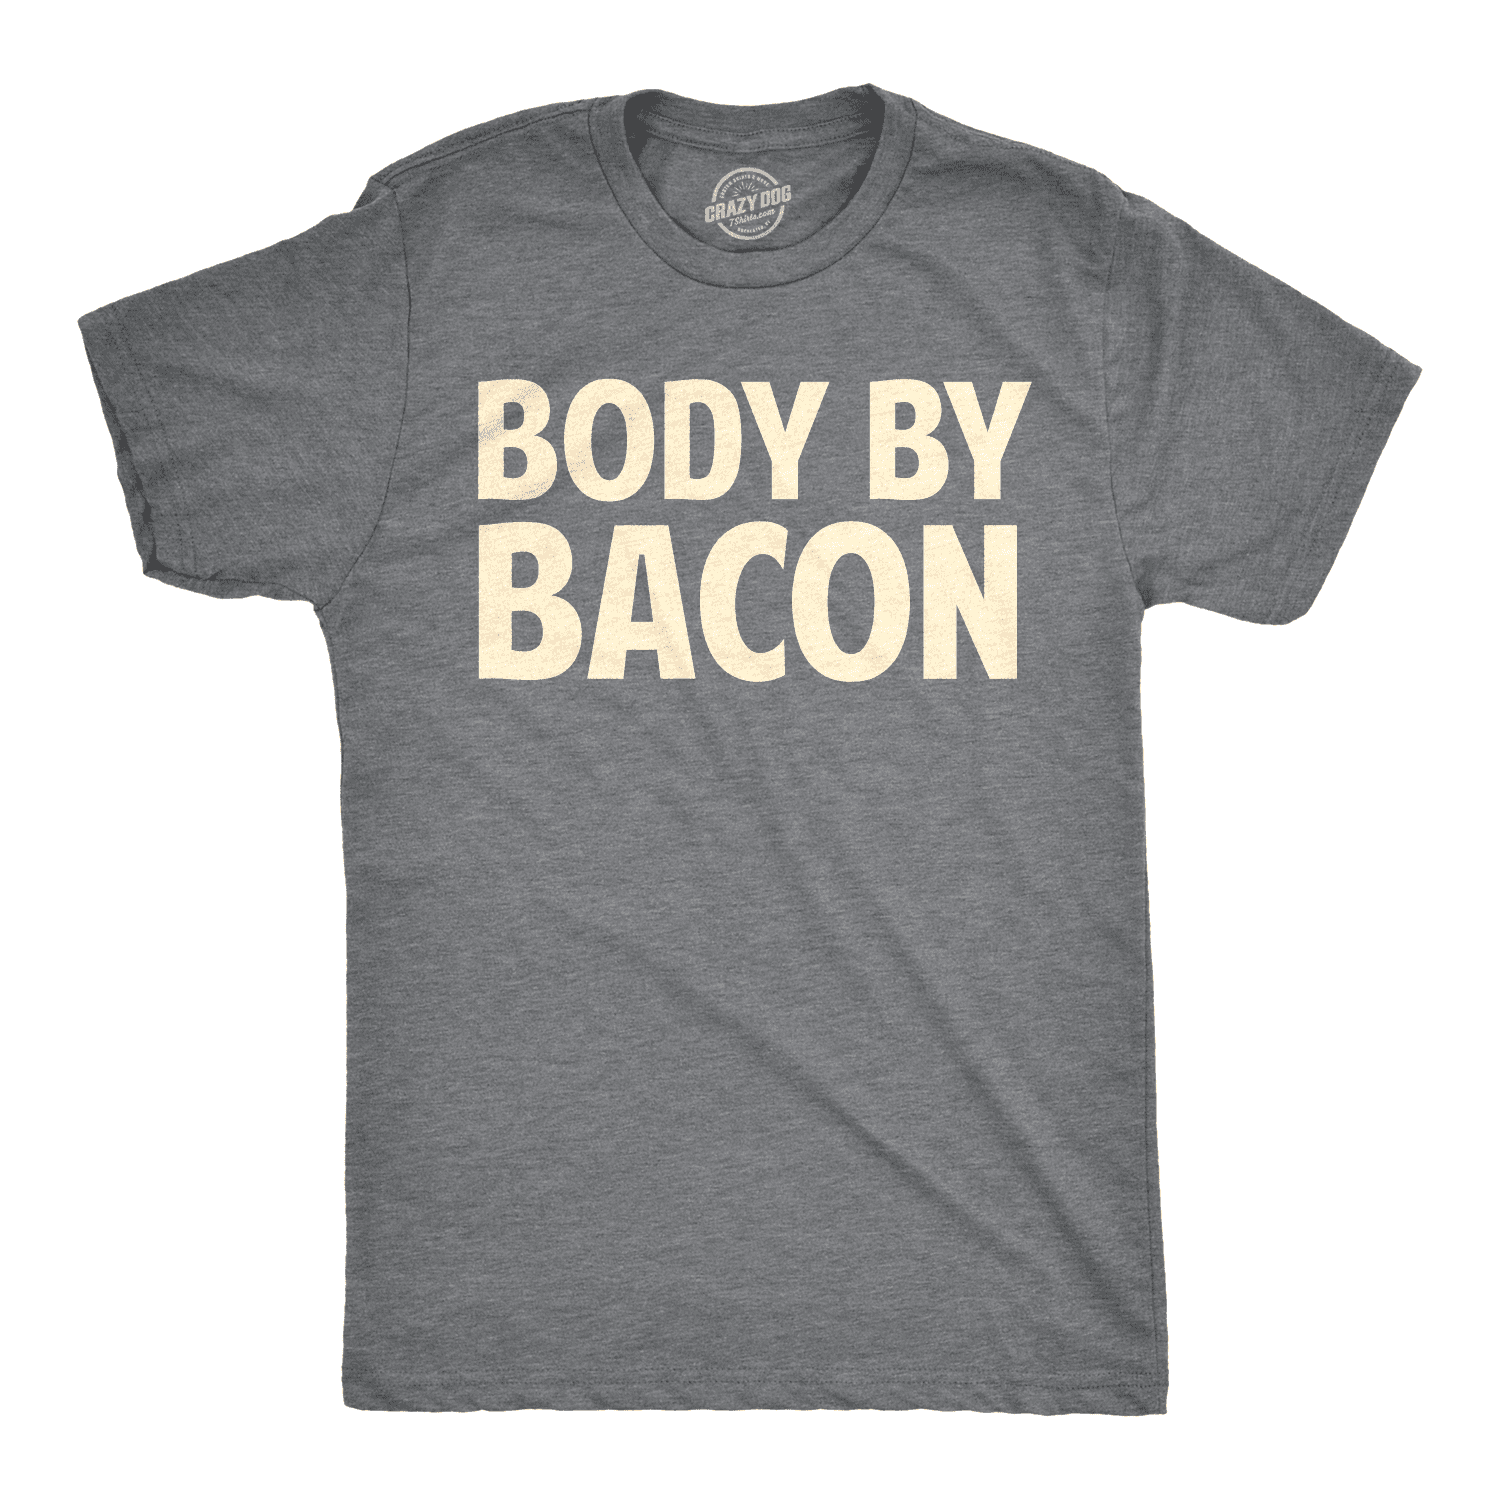 Funny T-shirt THIS GUY LOVES BACON joke 